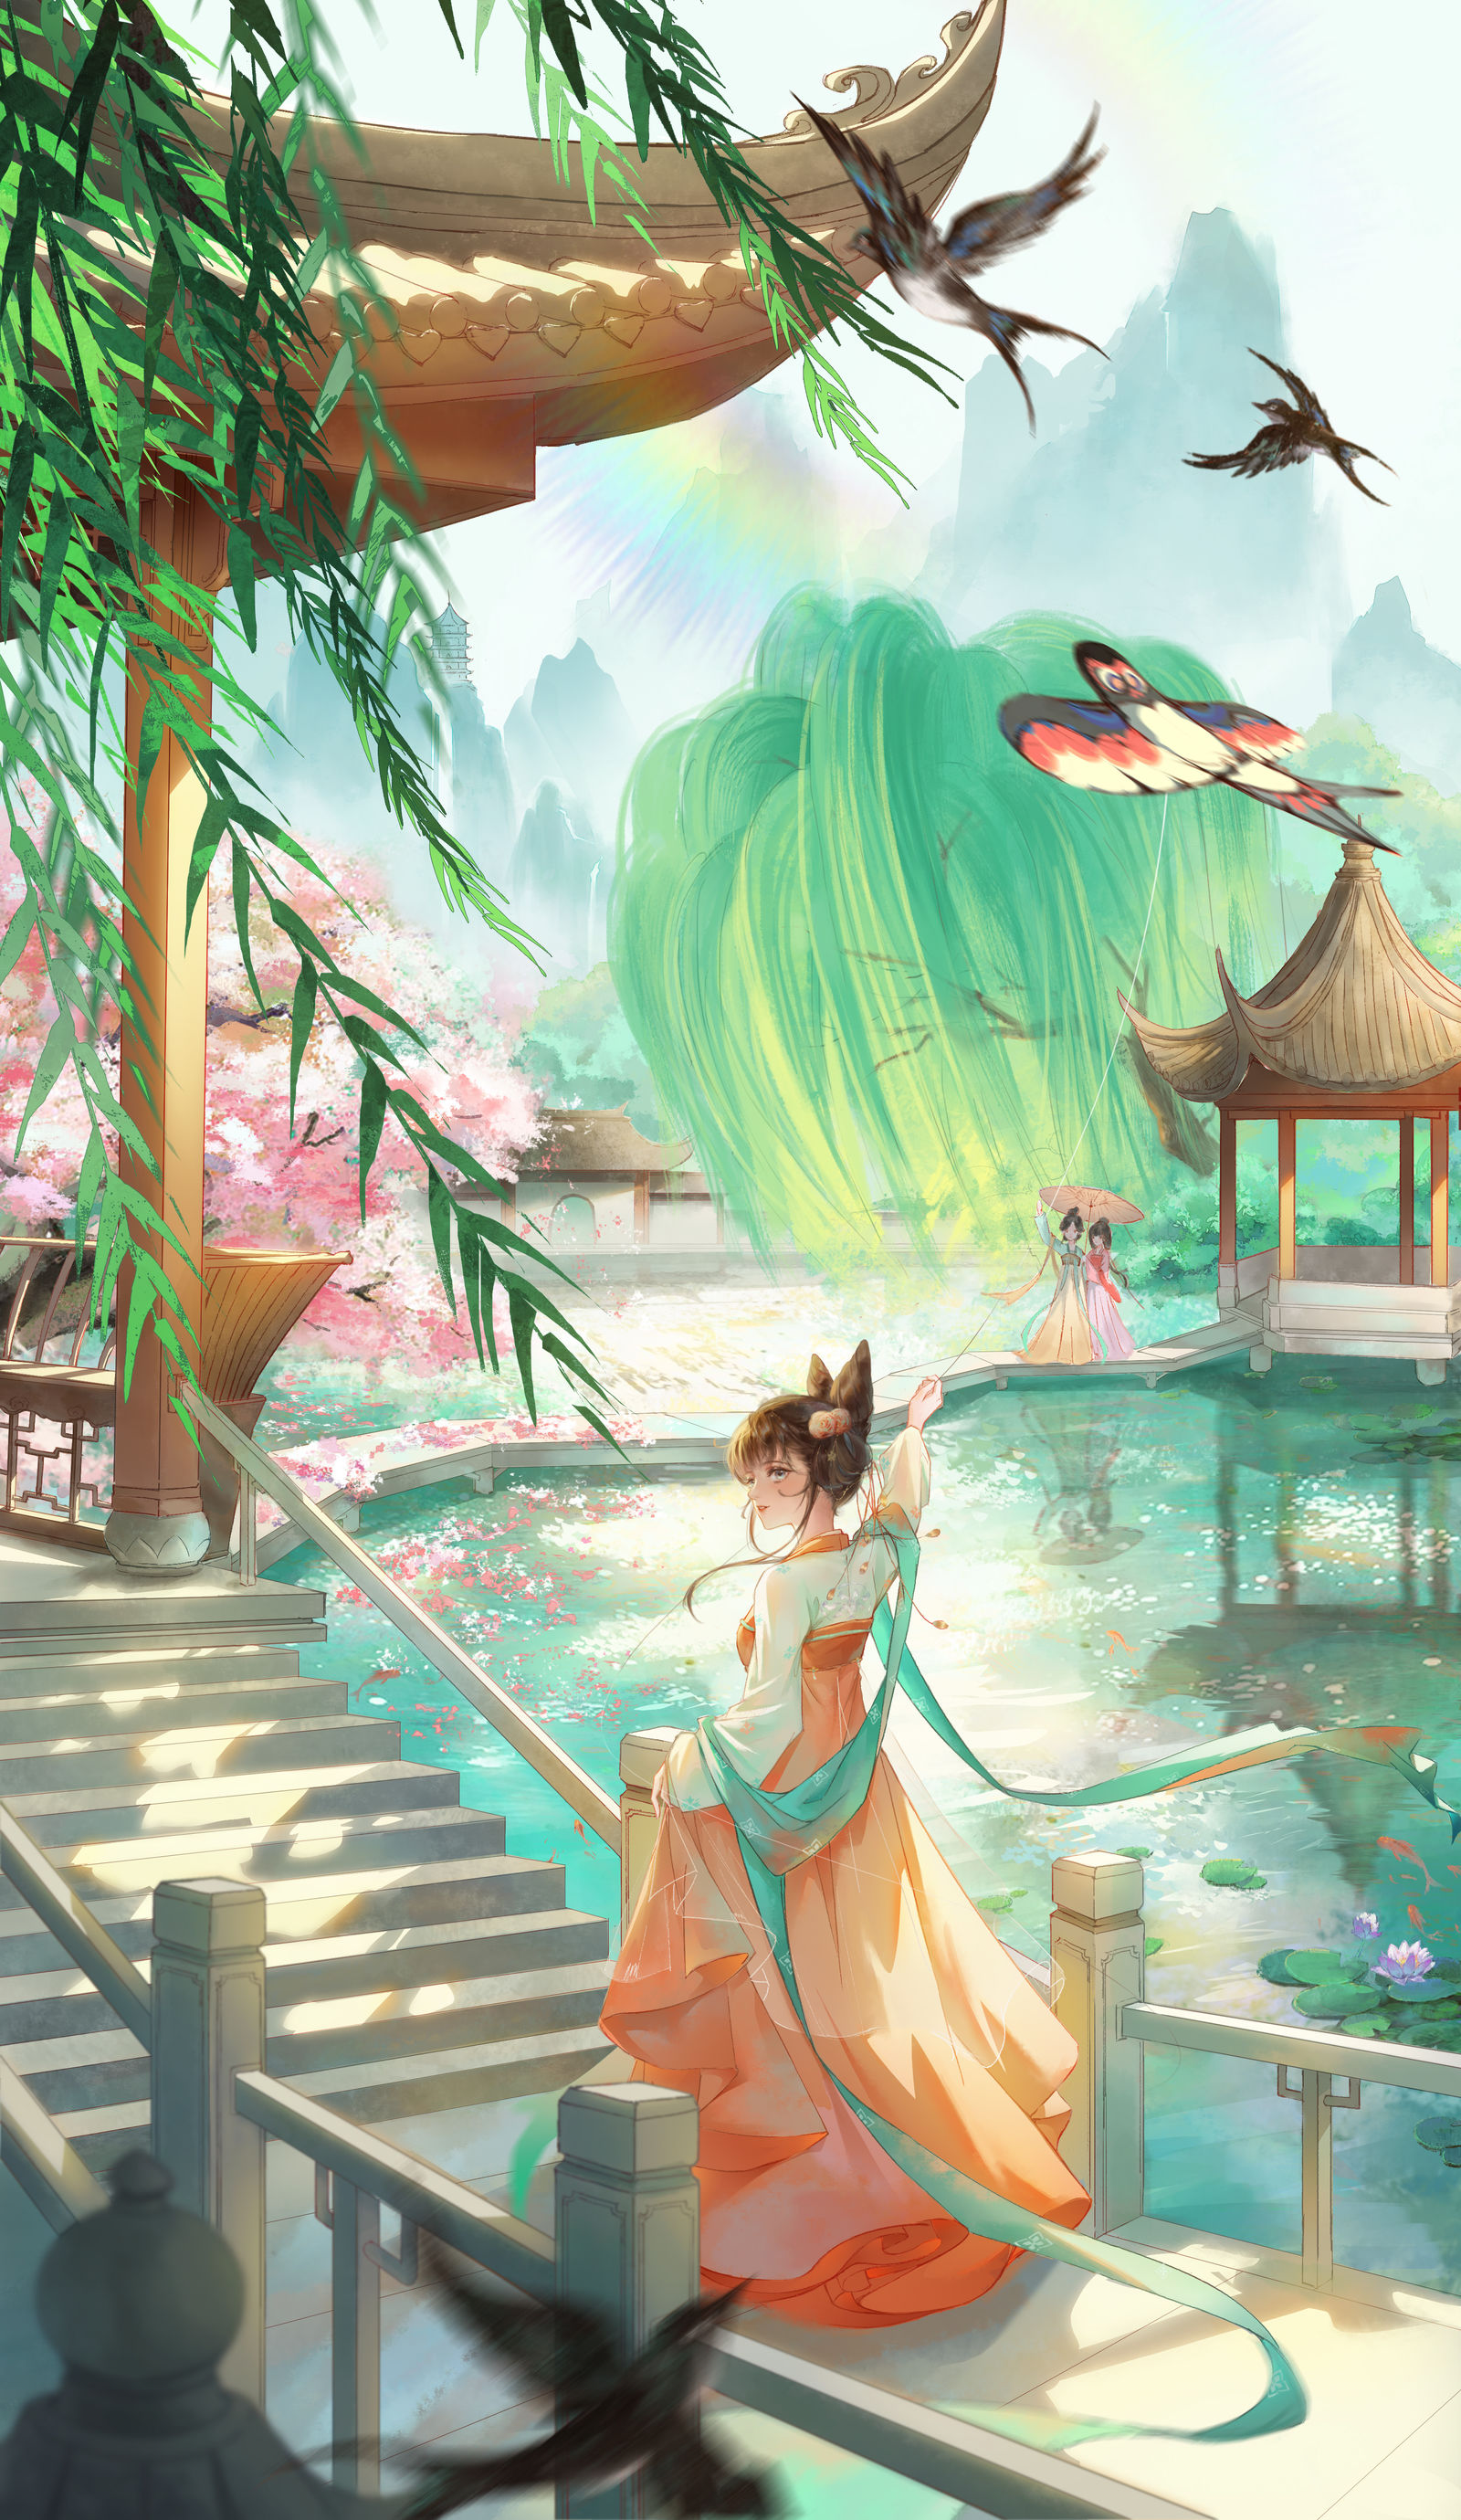 个人原创系列插画《阳春三月-湖心亭》